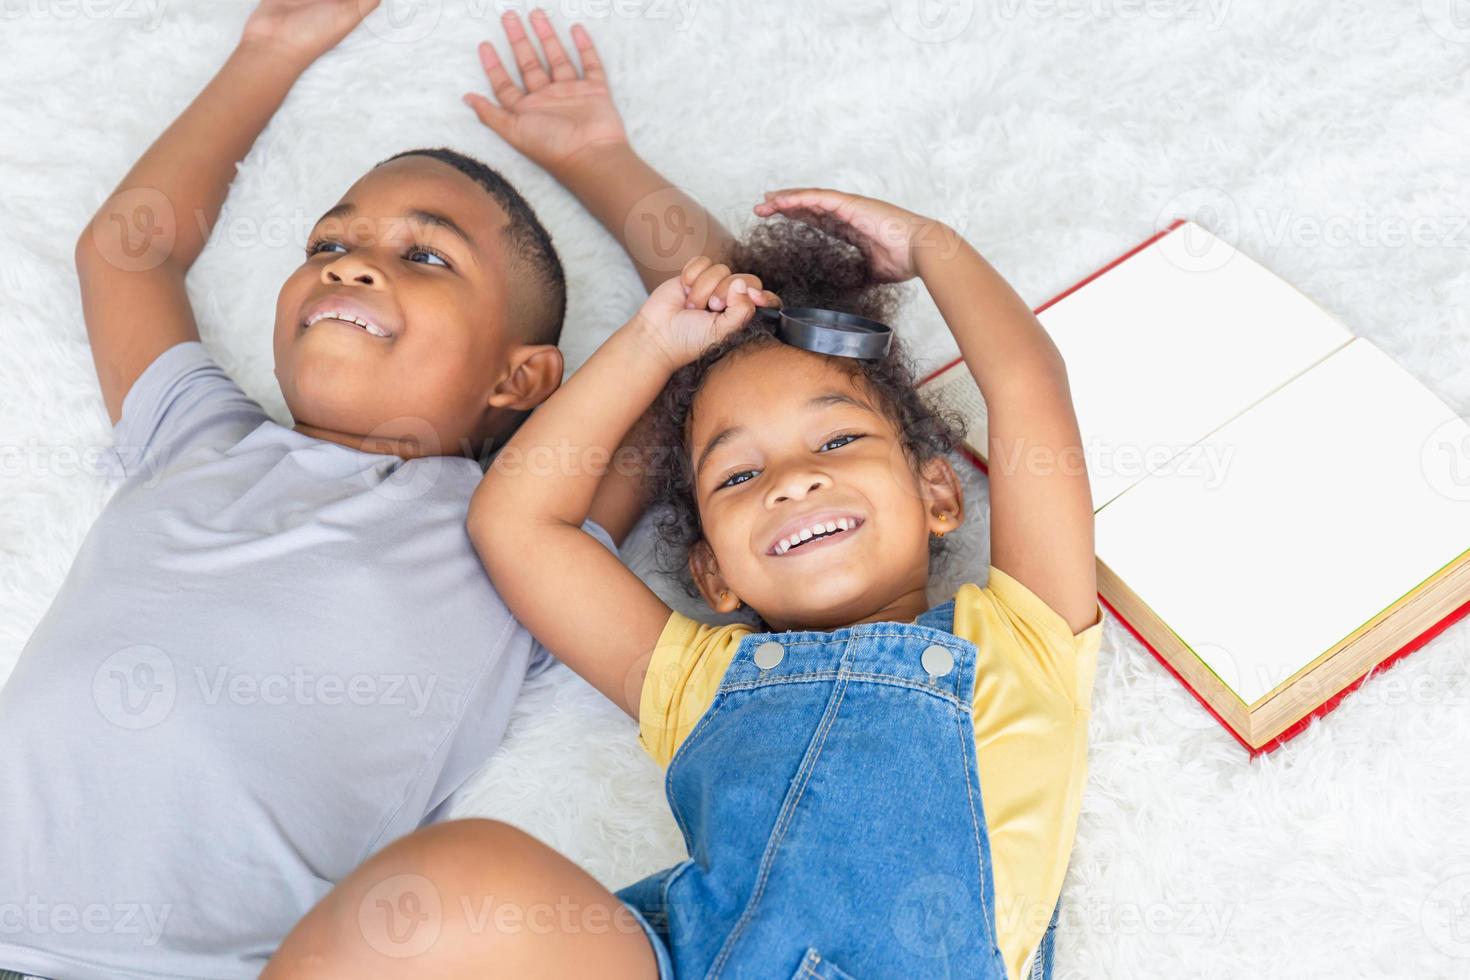 retrato de alto ângulo de duas crianças deitadas no chão branco e olhando para a câmera, feliz irmã e irmão brincando na sala de estar foto